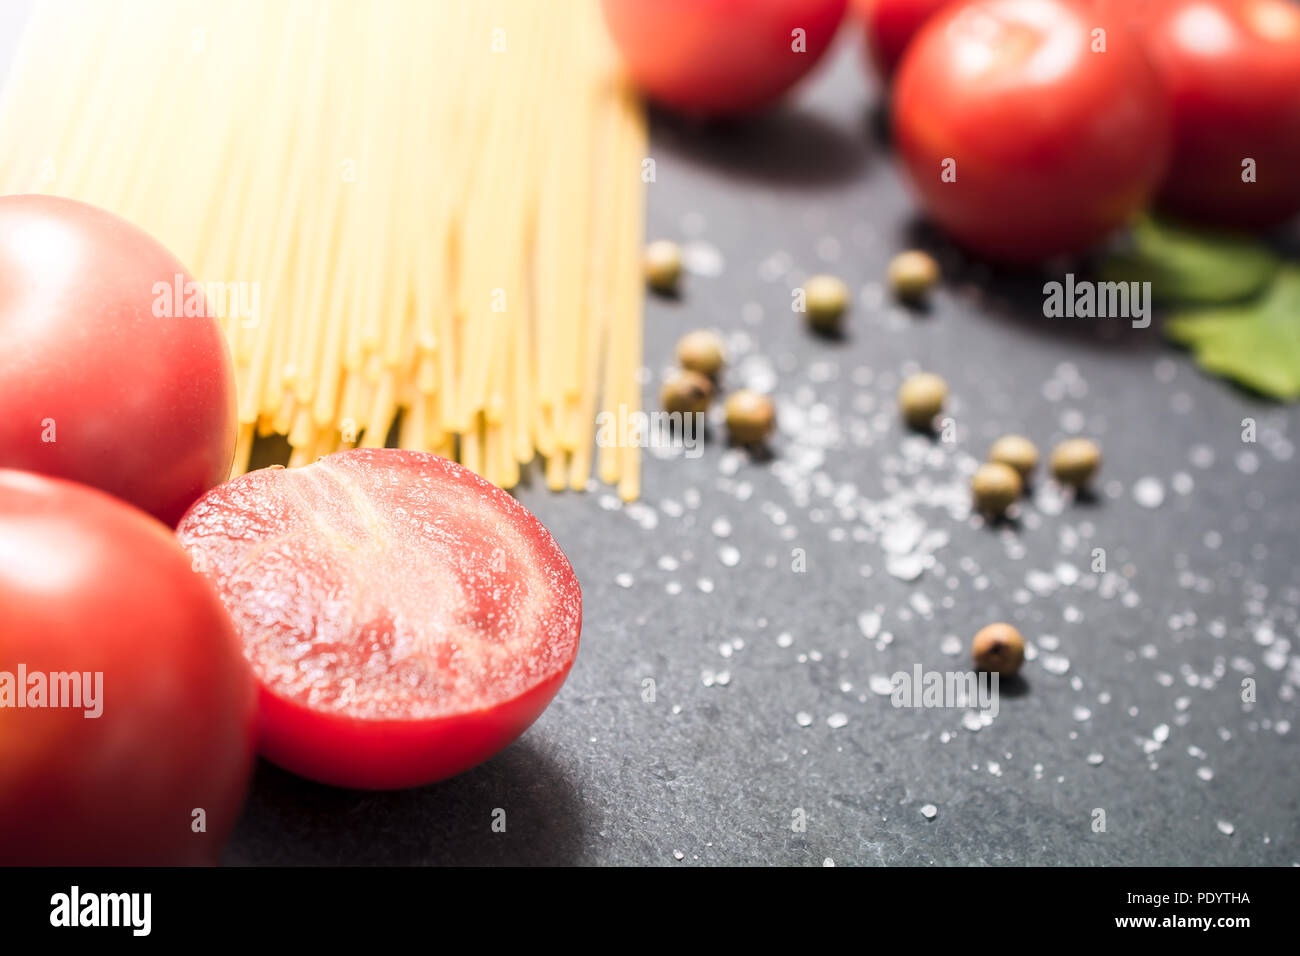 Cuisine des ingrédients comme les nouilles, les tomates et les épices sur ardoise Banque D'Images